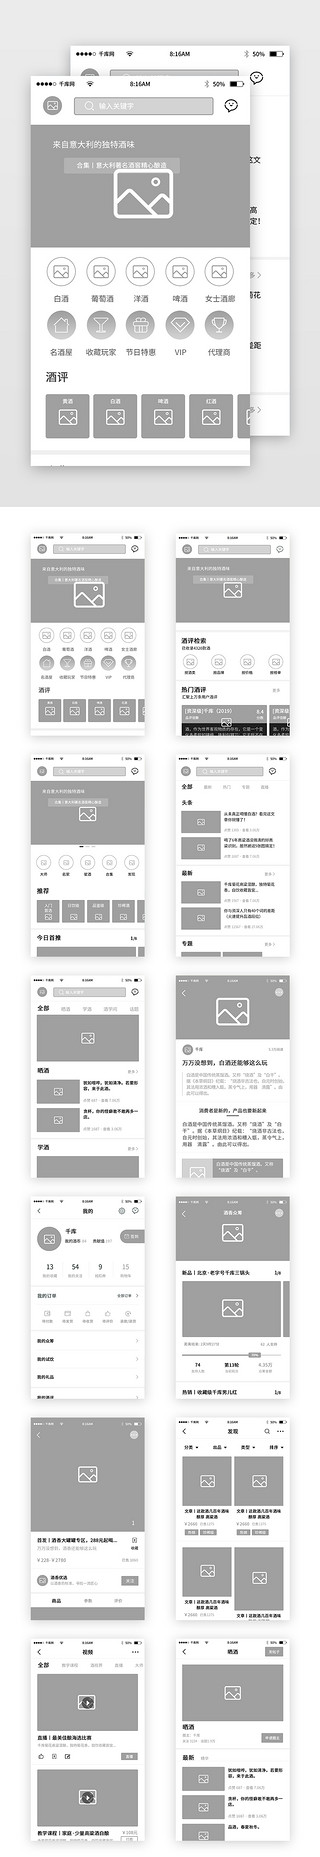 流程表设计UI设计素材_酒香美酒app流程原型图